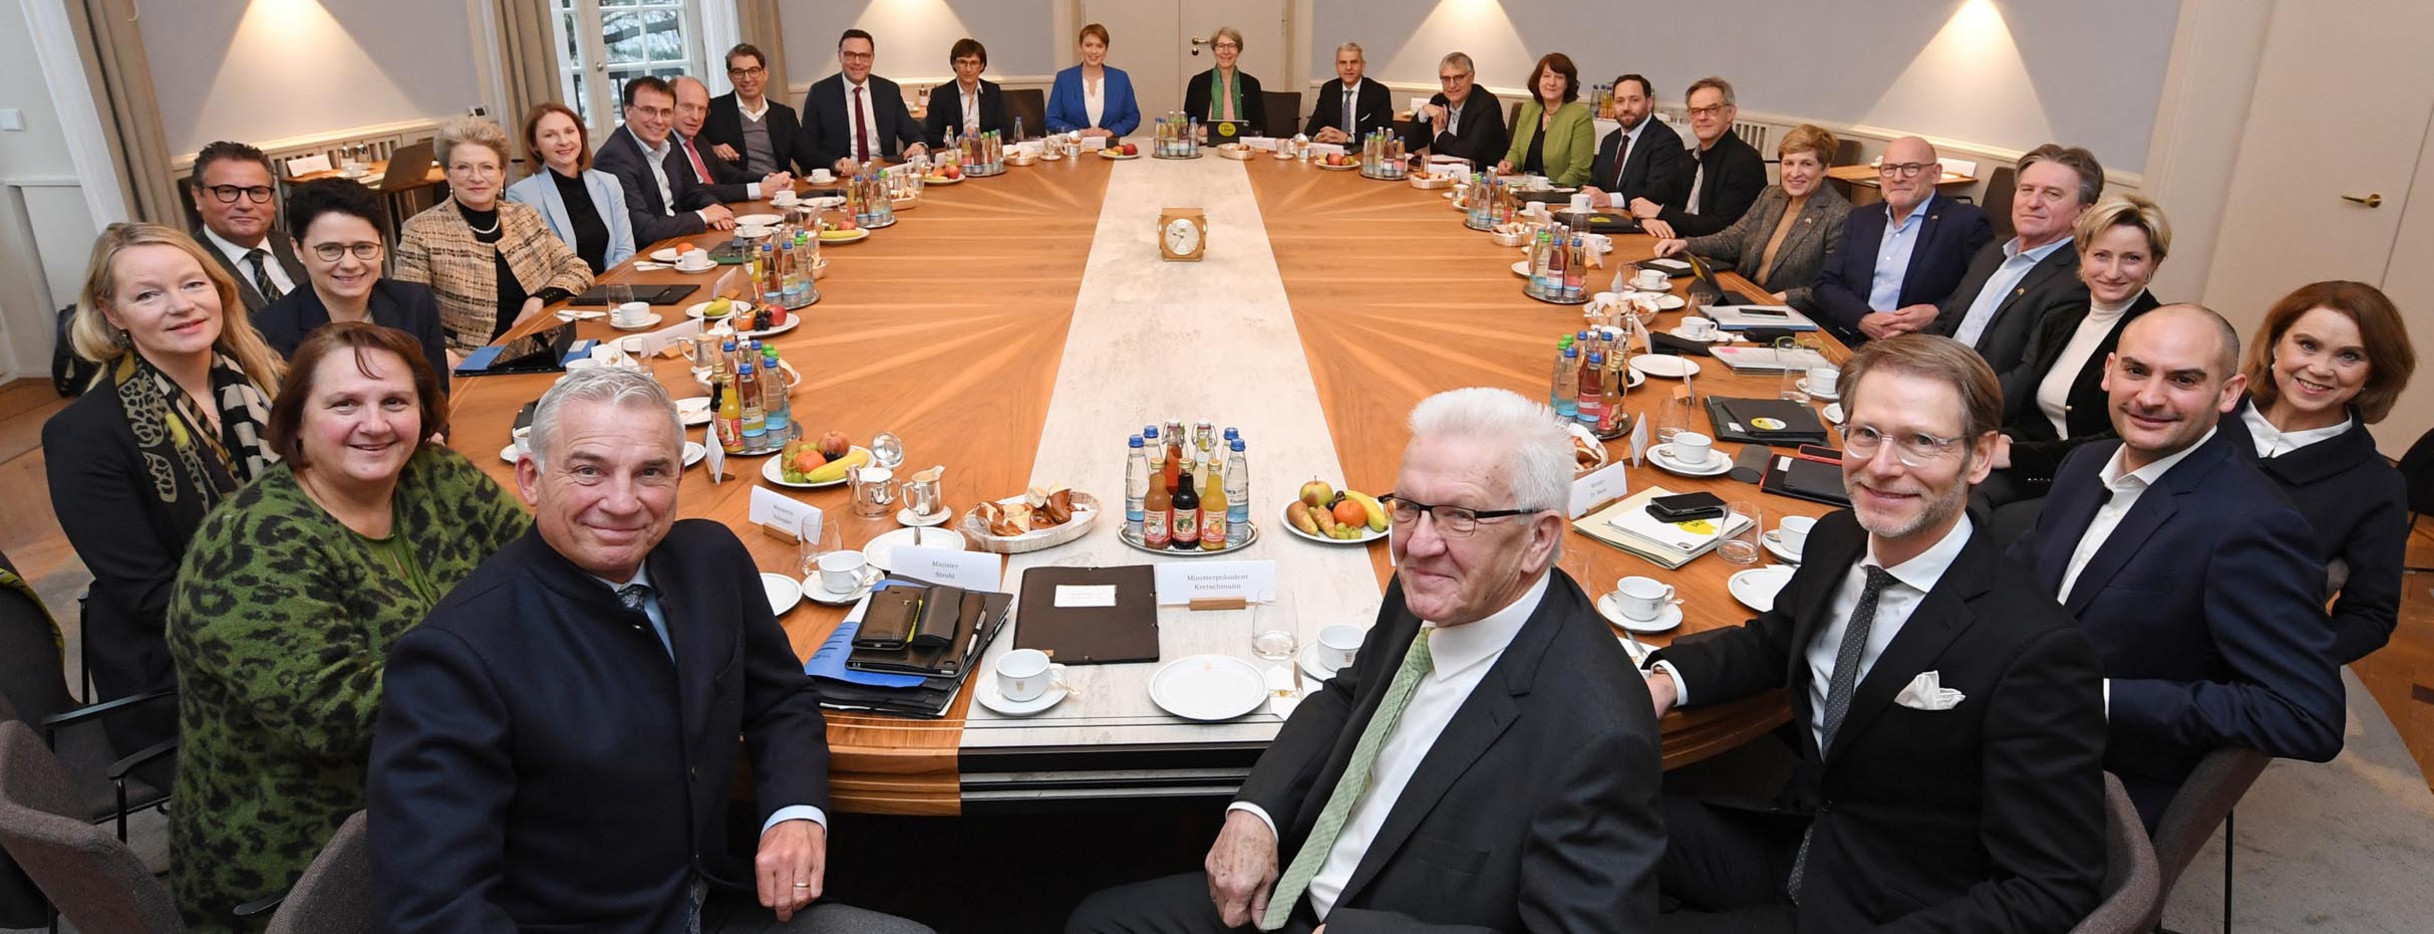 Die Kabinettsmitglieder sitzen am Kabinettstisch der Villa Reitzenstein.